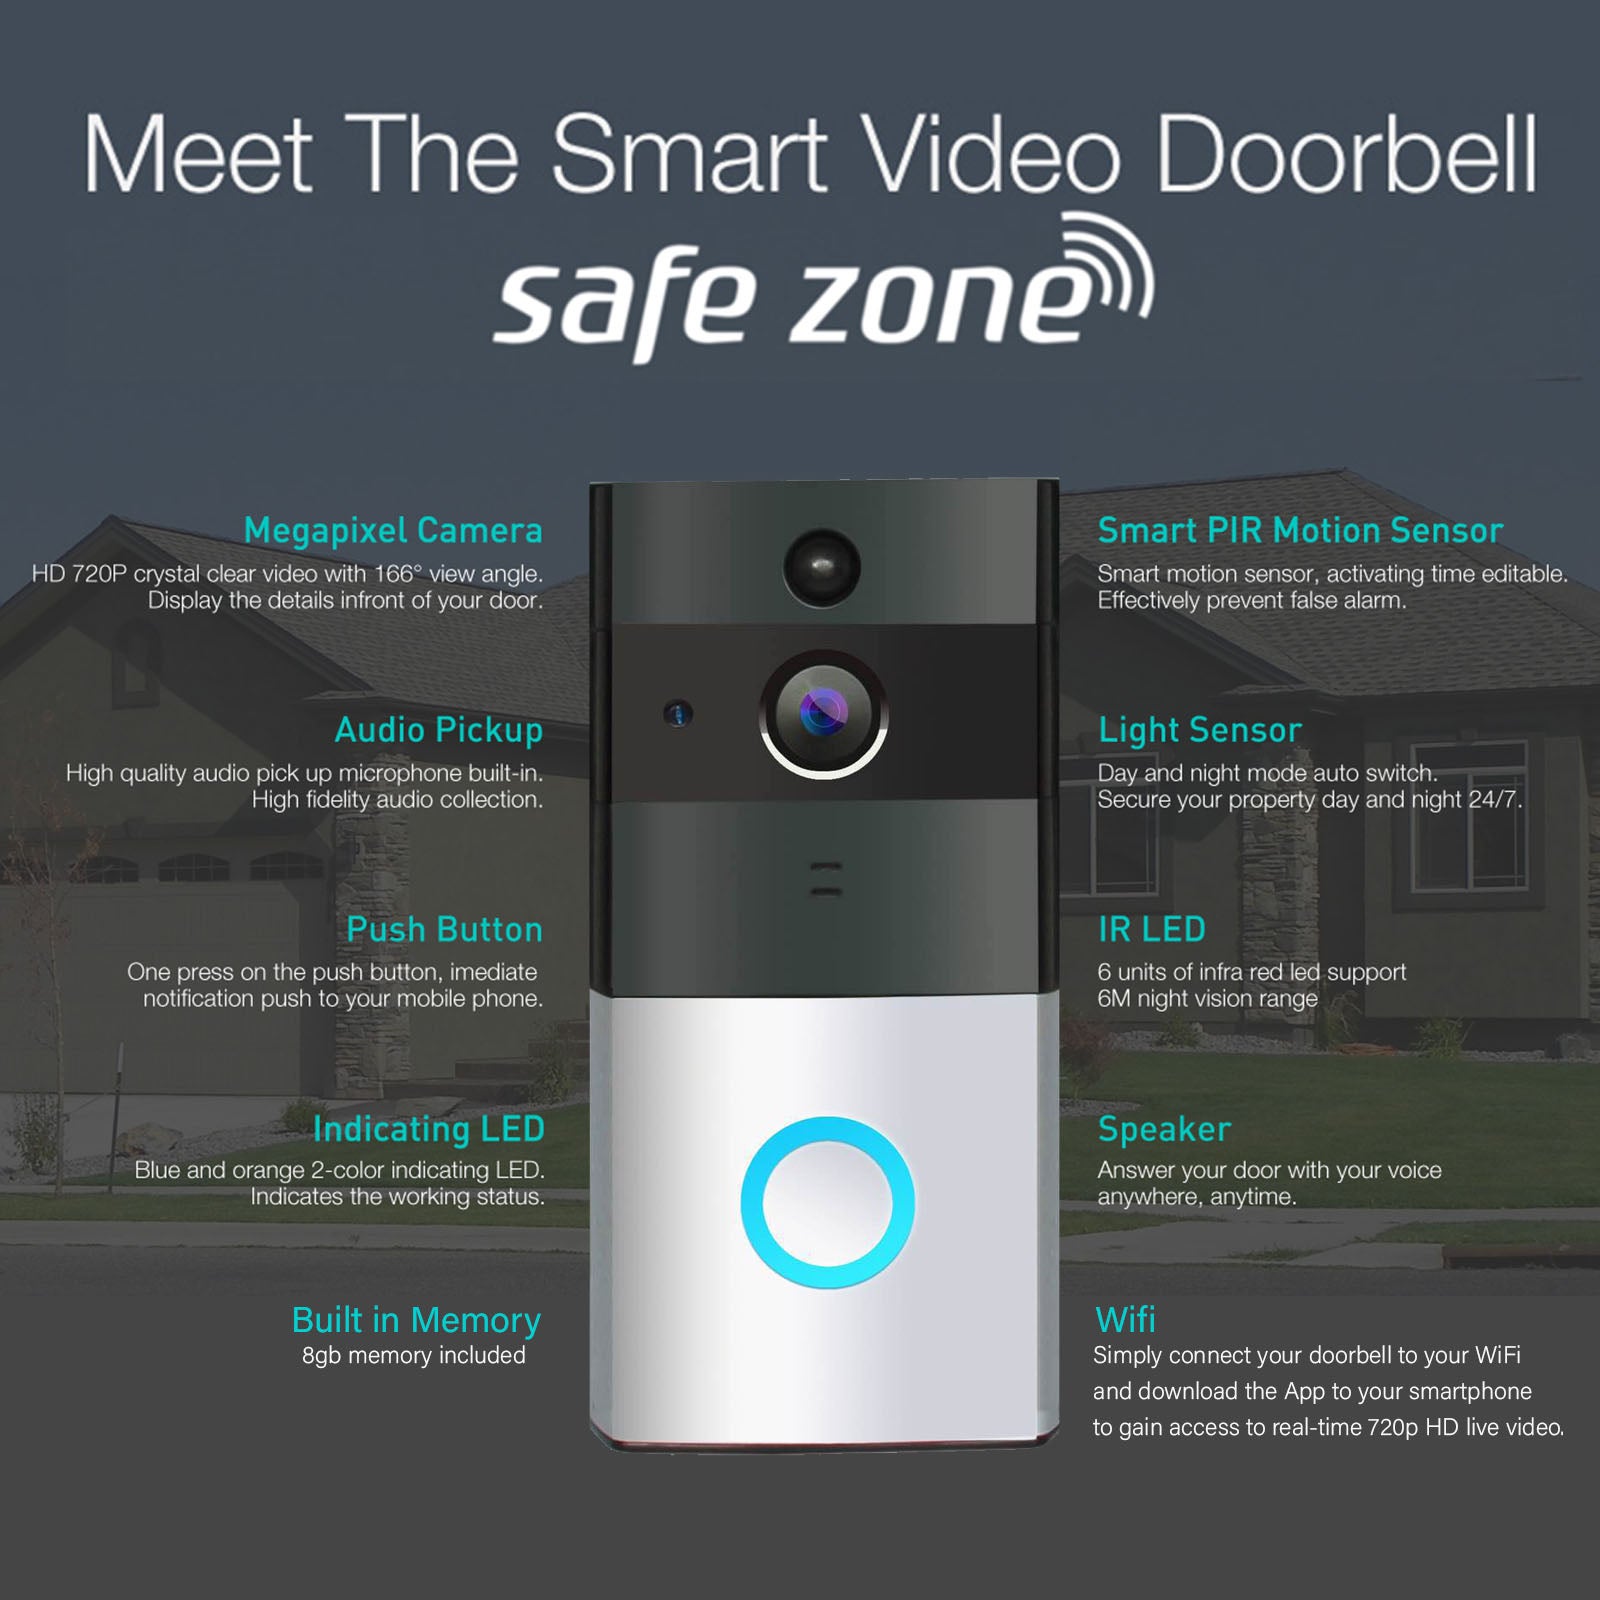 safe zone video doorbell